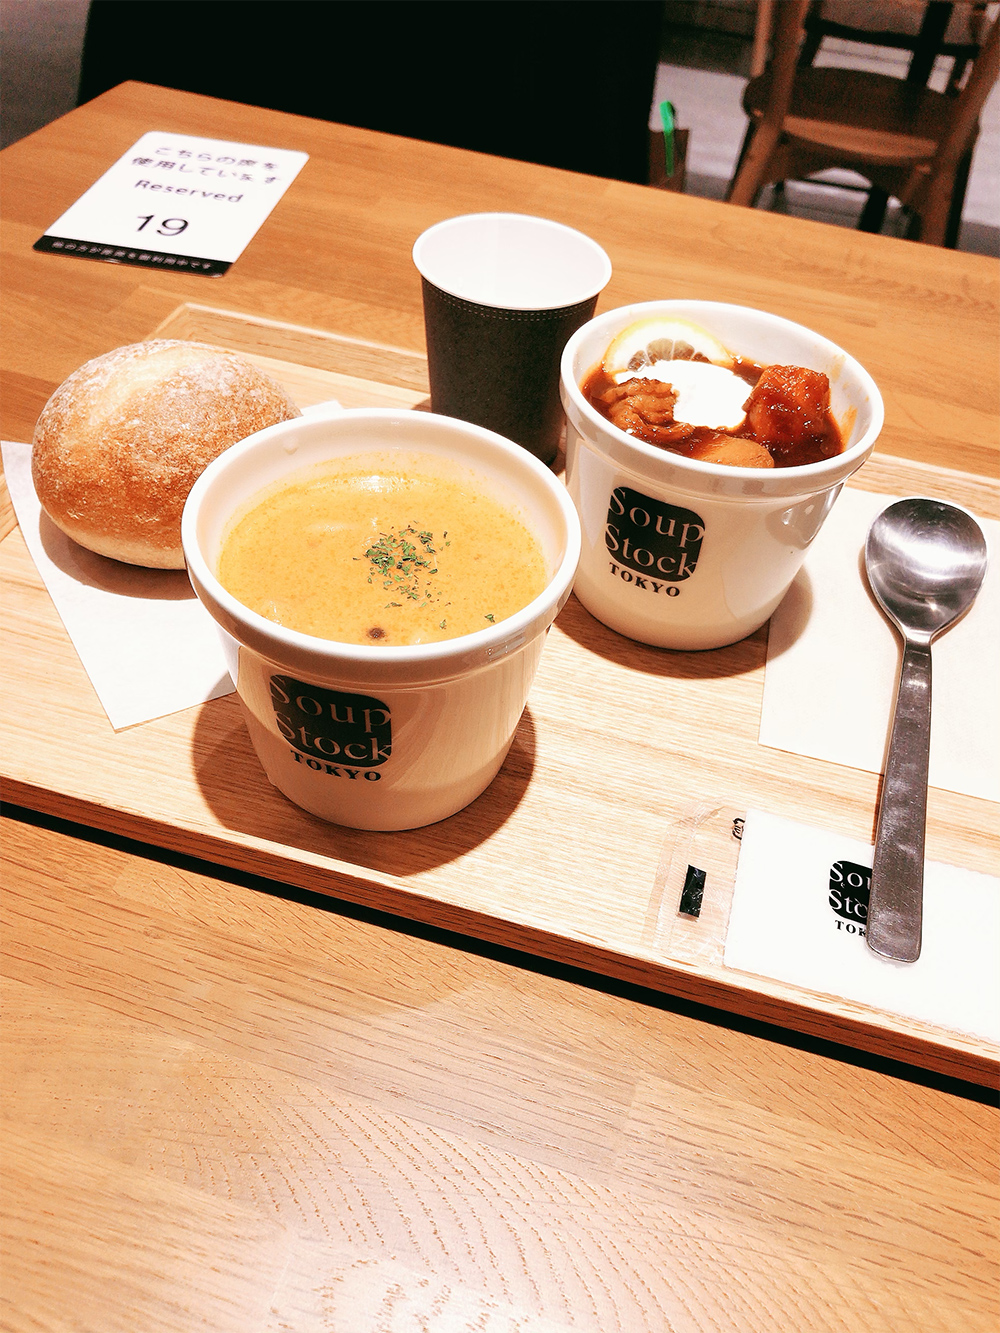 仙台駅の中にある食べられるスープ屋さん